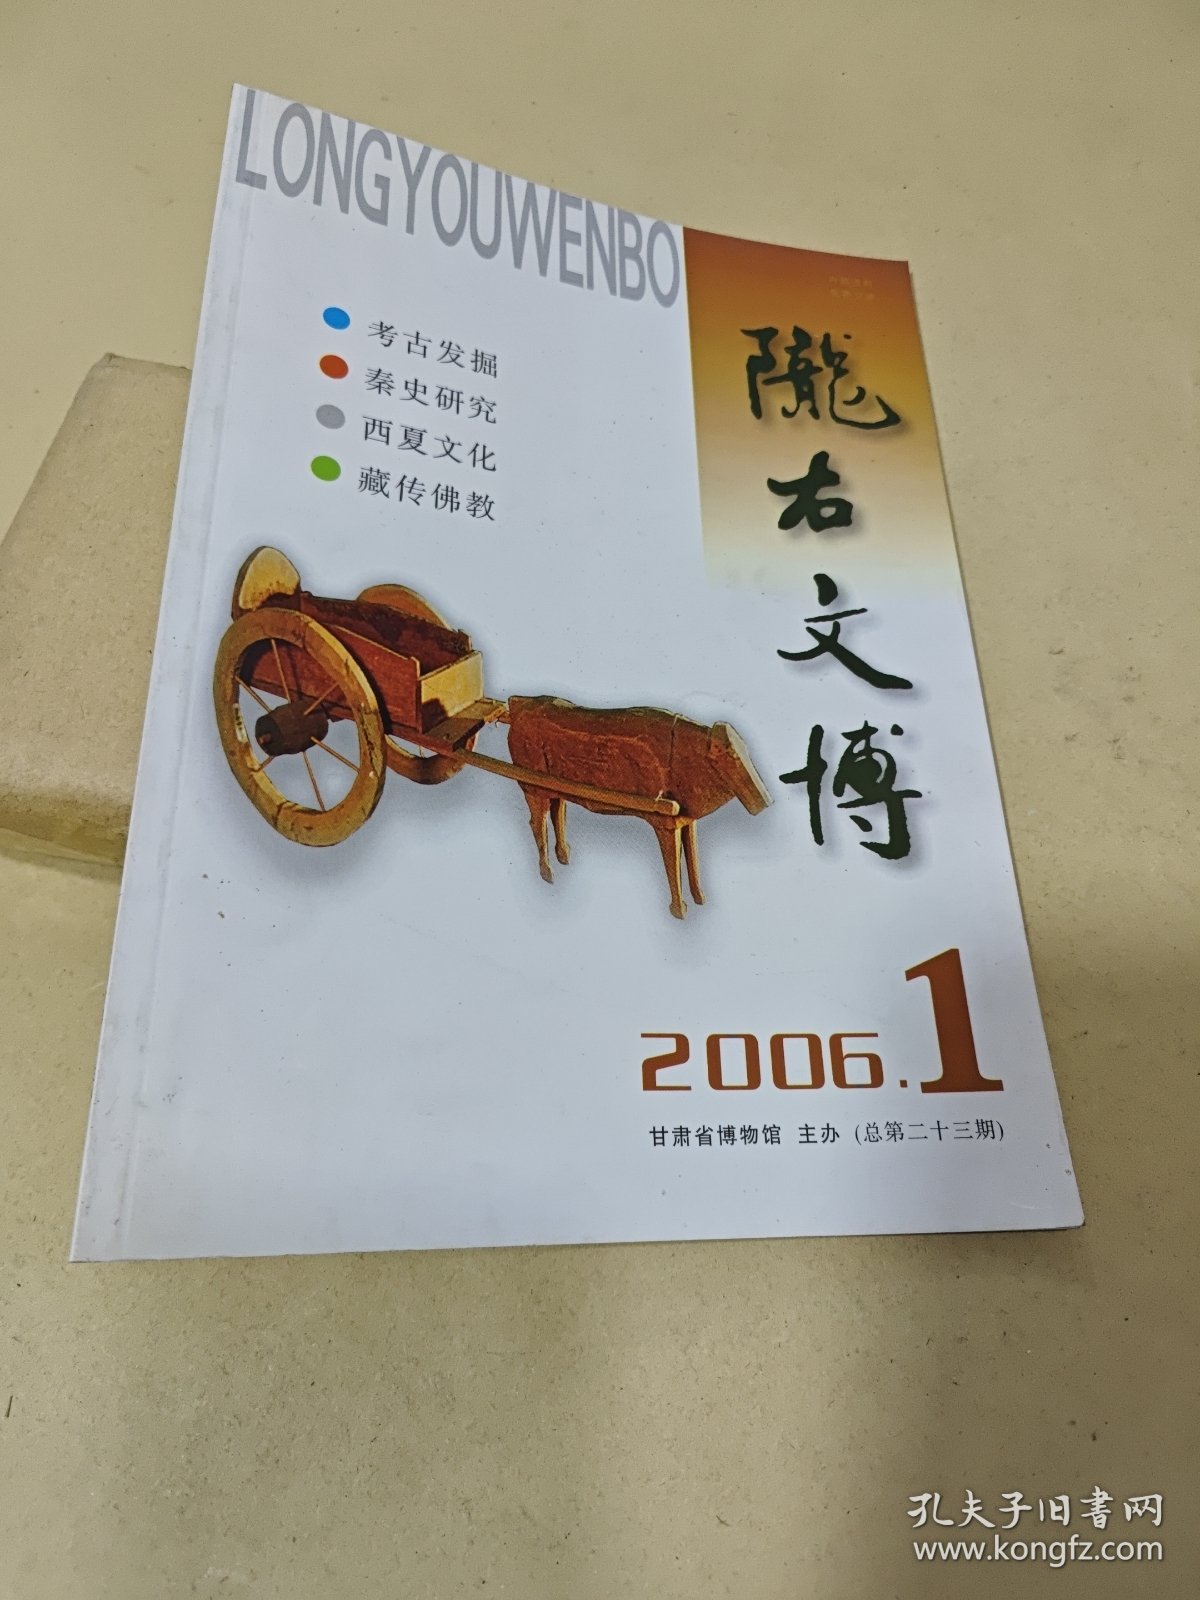 陇右文博 2006.1